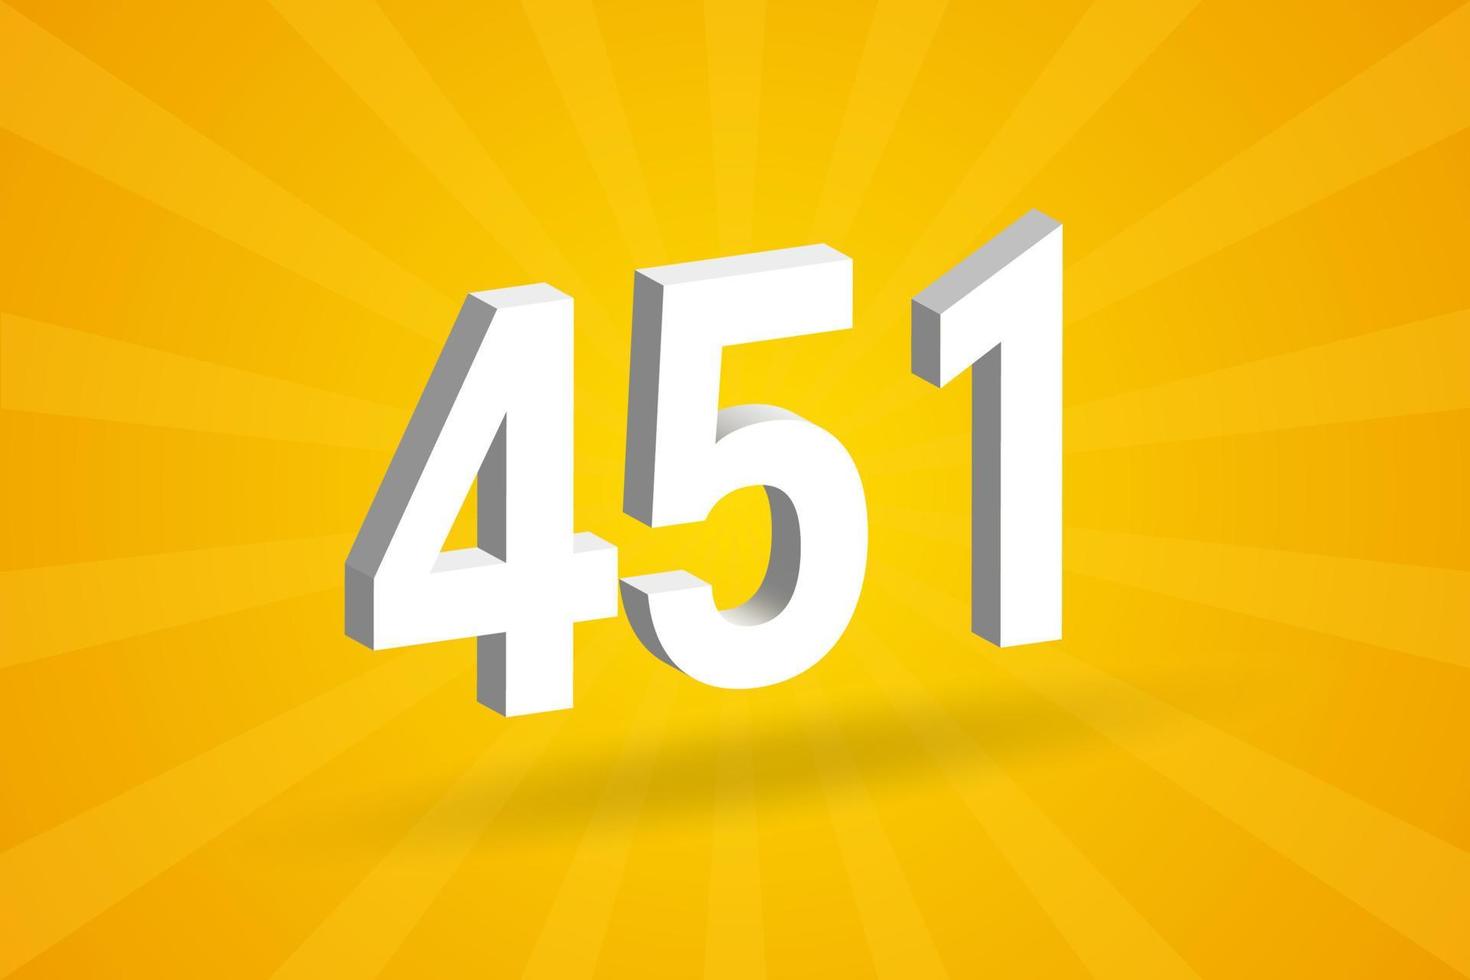 3d 451 aantal doopvont alfabet. wit 3d aantal 451 met geel achtergrond vector